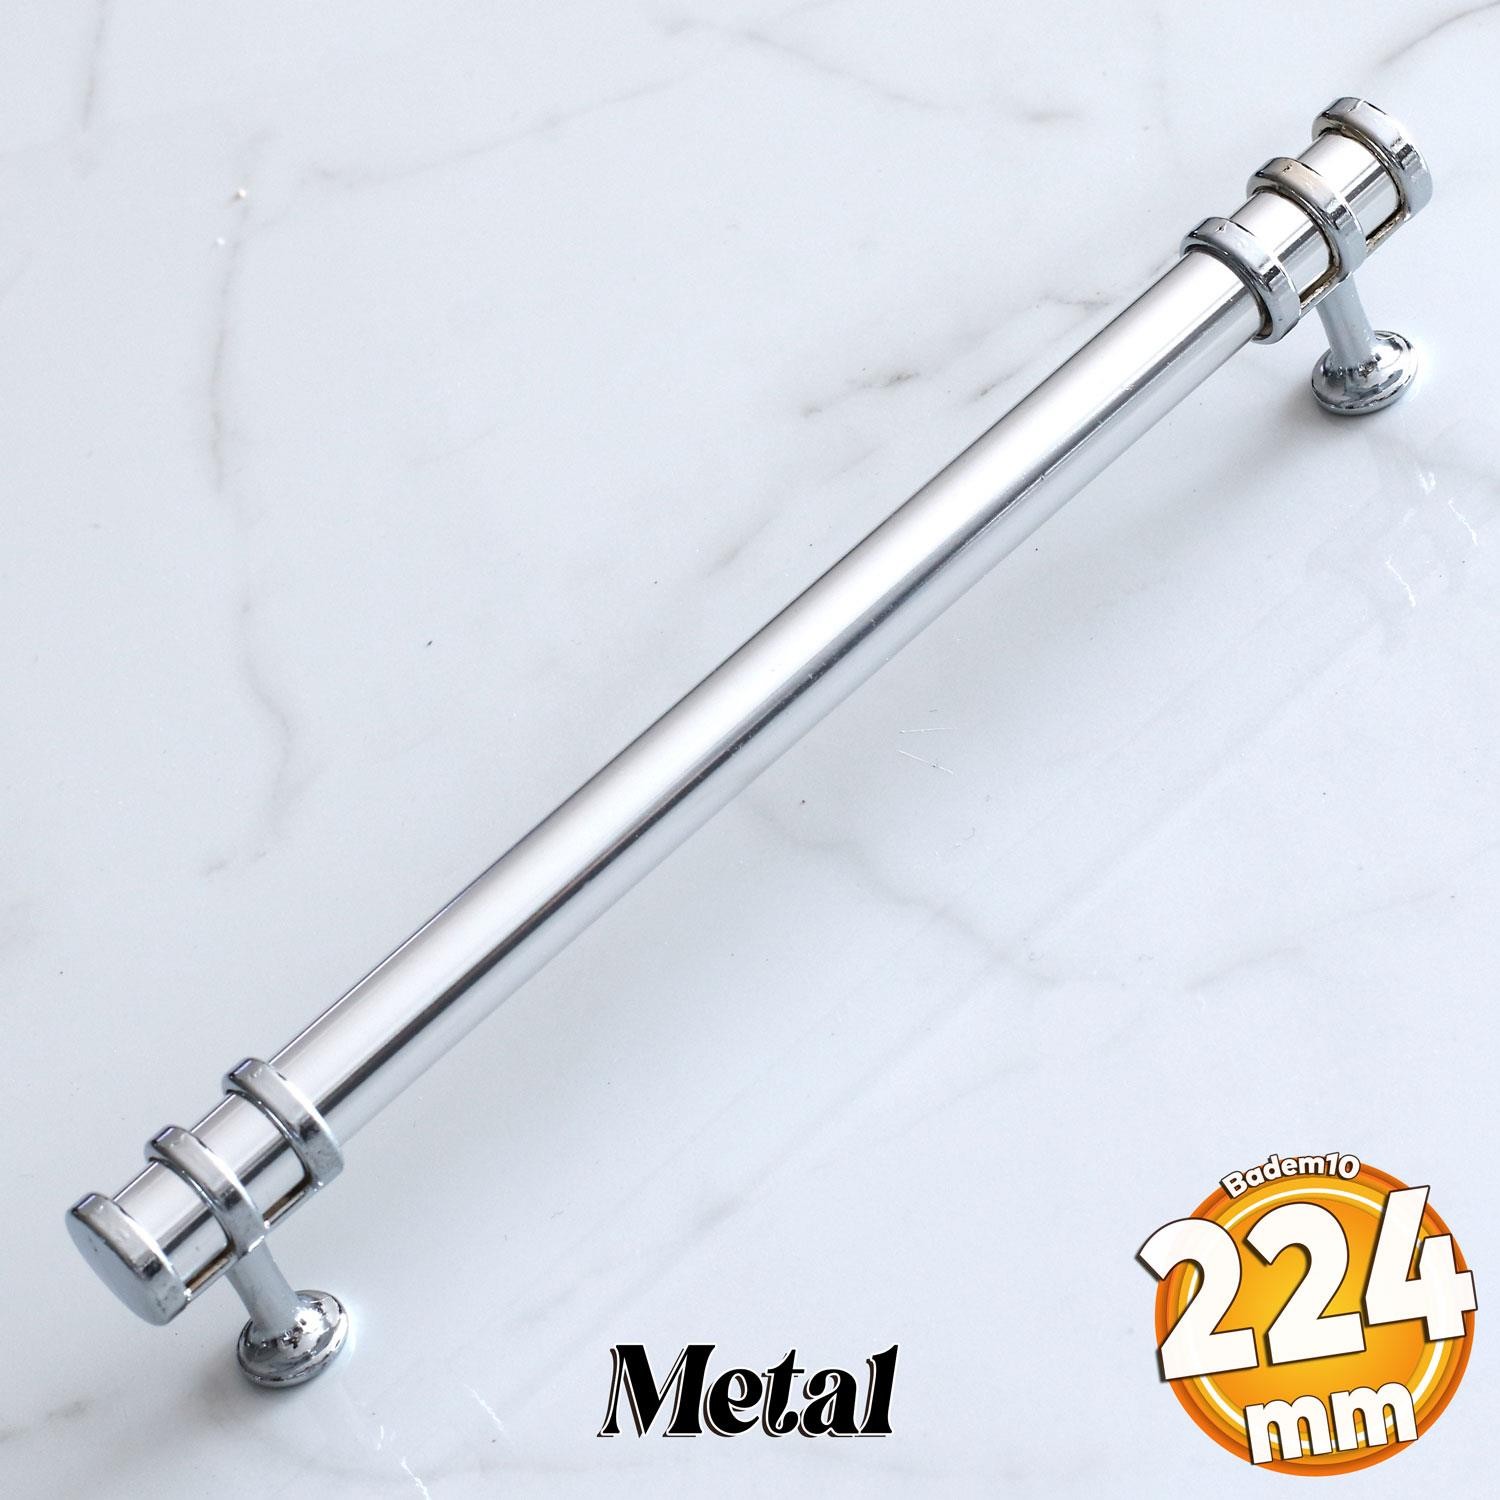 Yüzük Kulp 224 mm Krom Metal Mobilya Mutfak Çekmece Dolap Kapak Kulpları Dolabı Kulbu Kulpu 22.4 cm